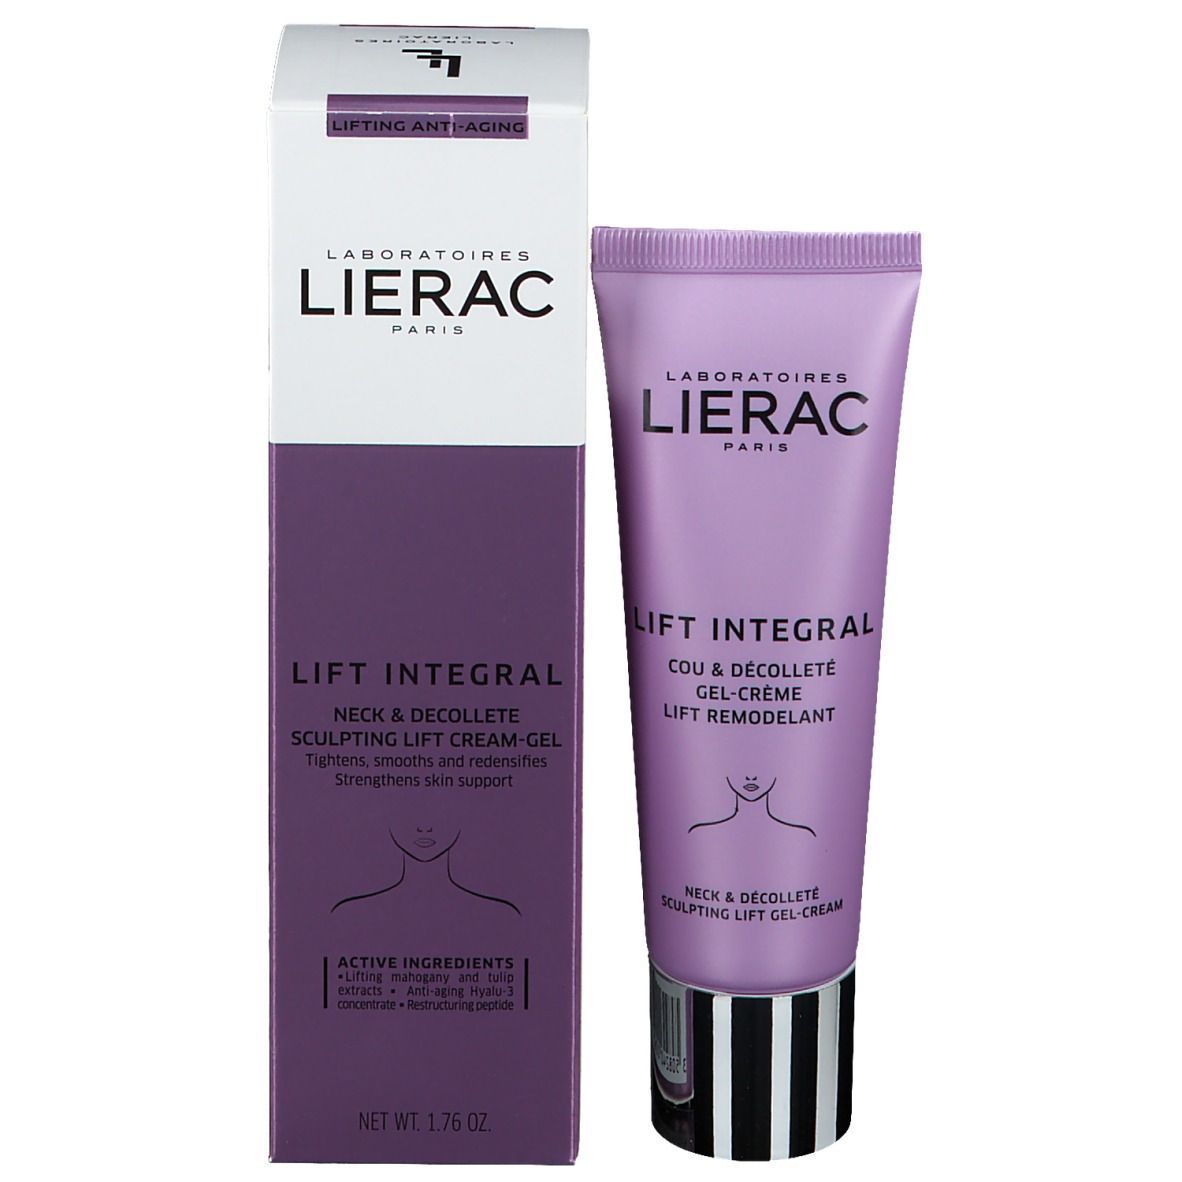 LIERAC LIFT INTEGRAL Gel-Crème Lifting Cou, Décolleté